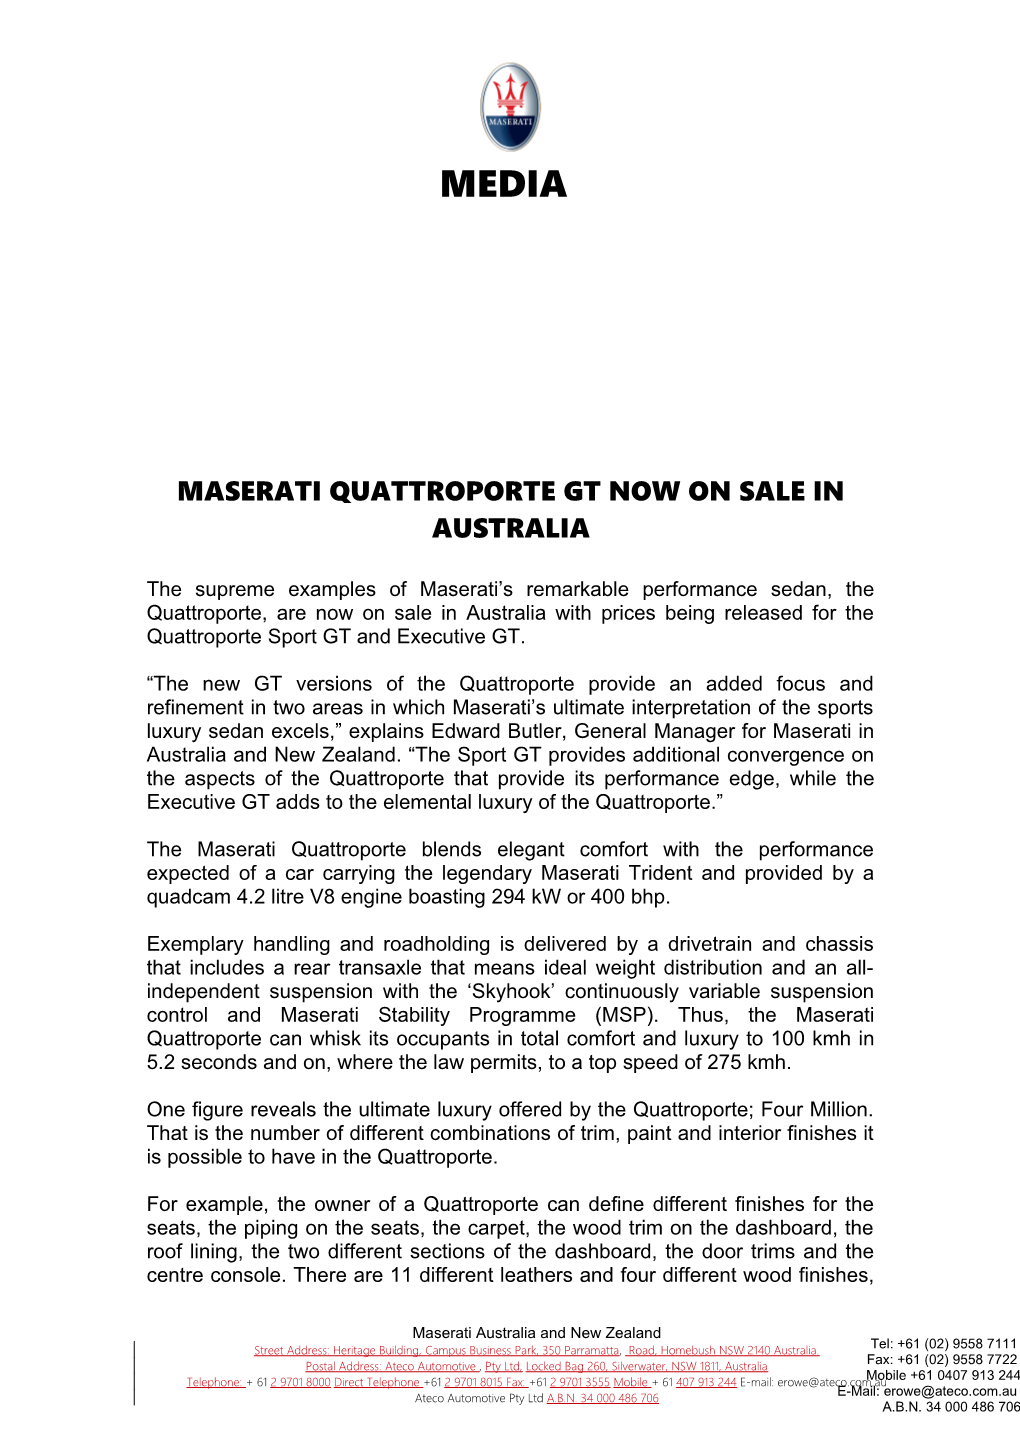 Maserati Quattroporte Gt Now on Sale in Australia